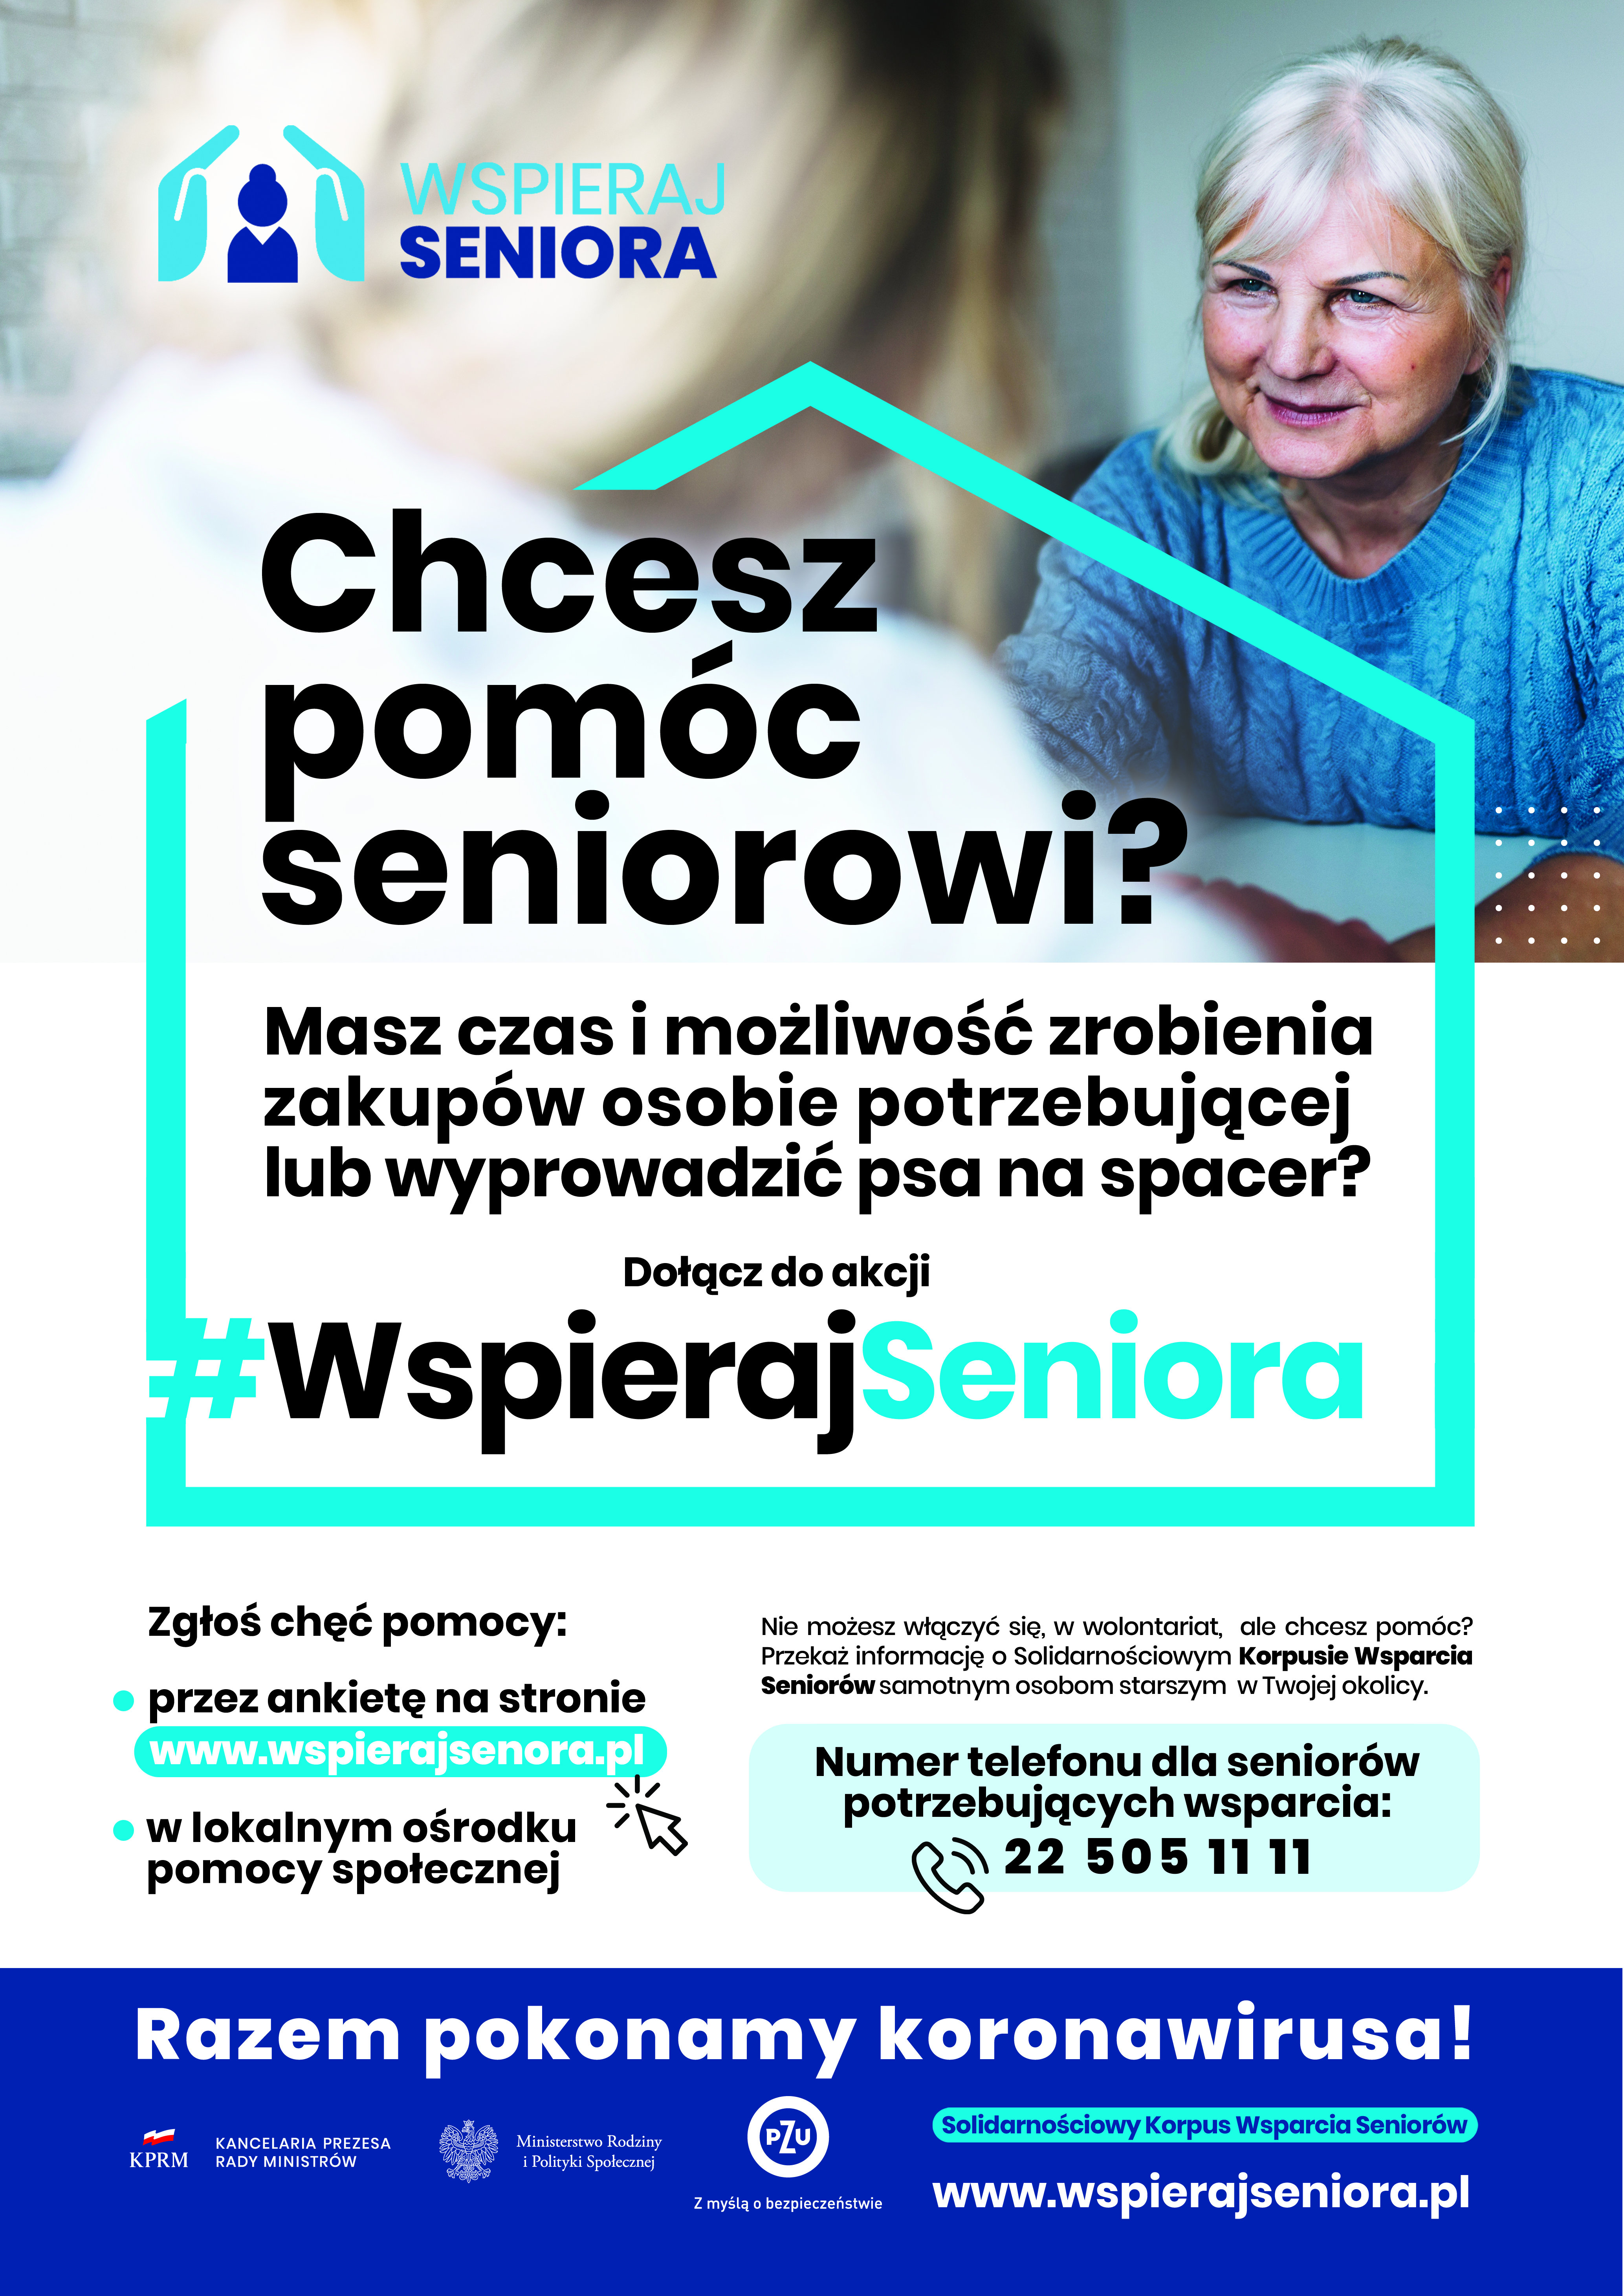 www.wspierajseniora.pl – adres dla wolontariuszy